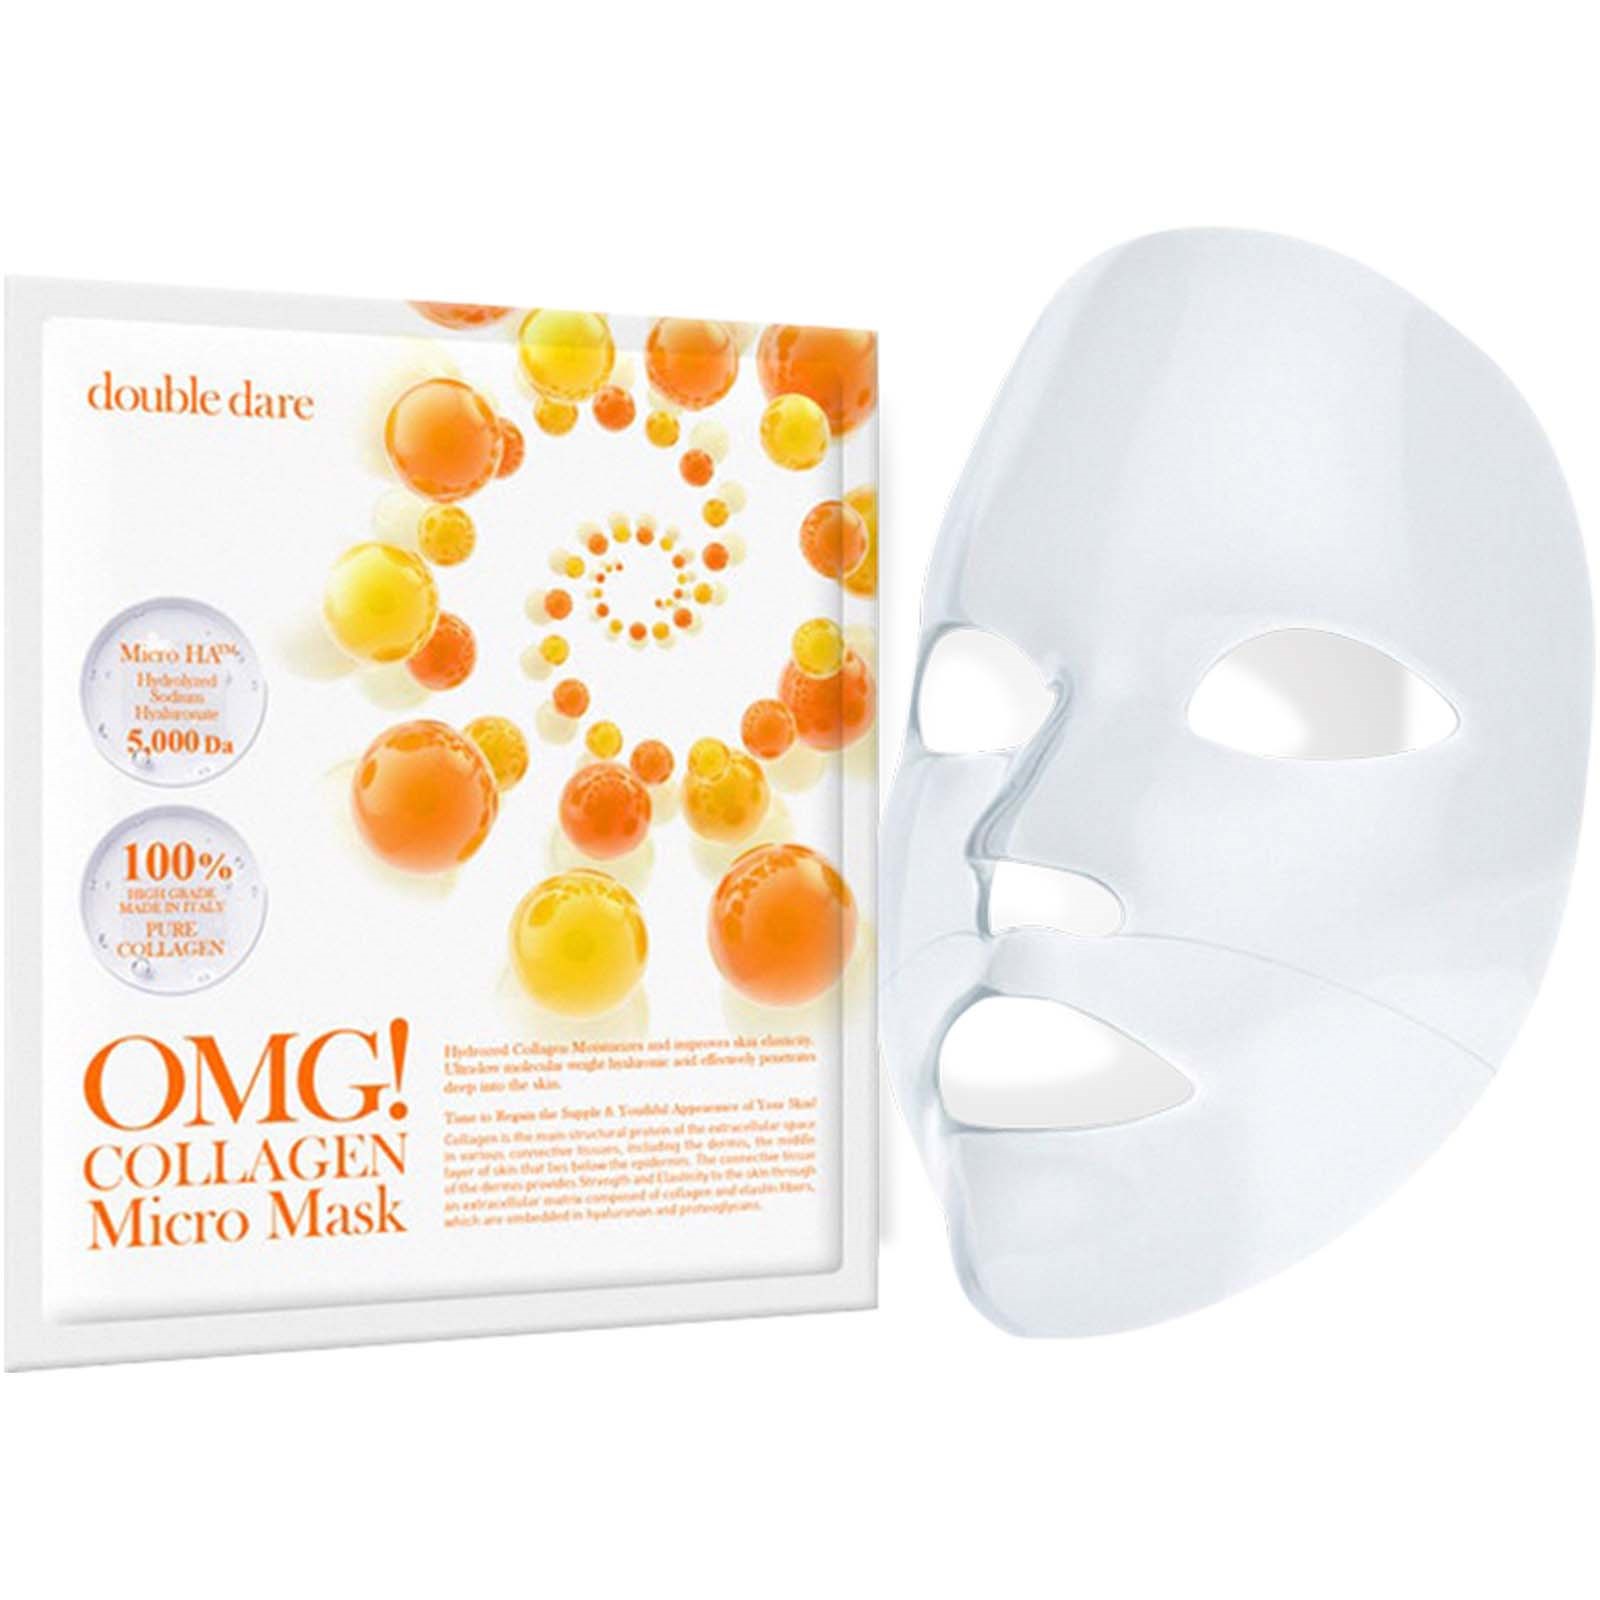 OMG! Double Dare Collagen Micro Mask